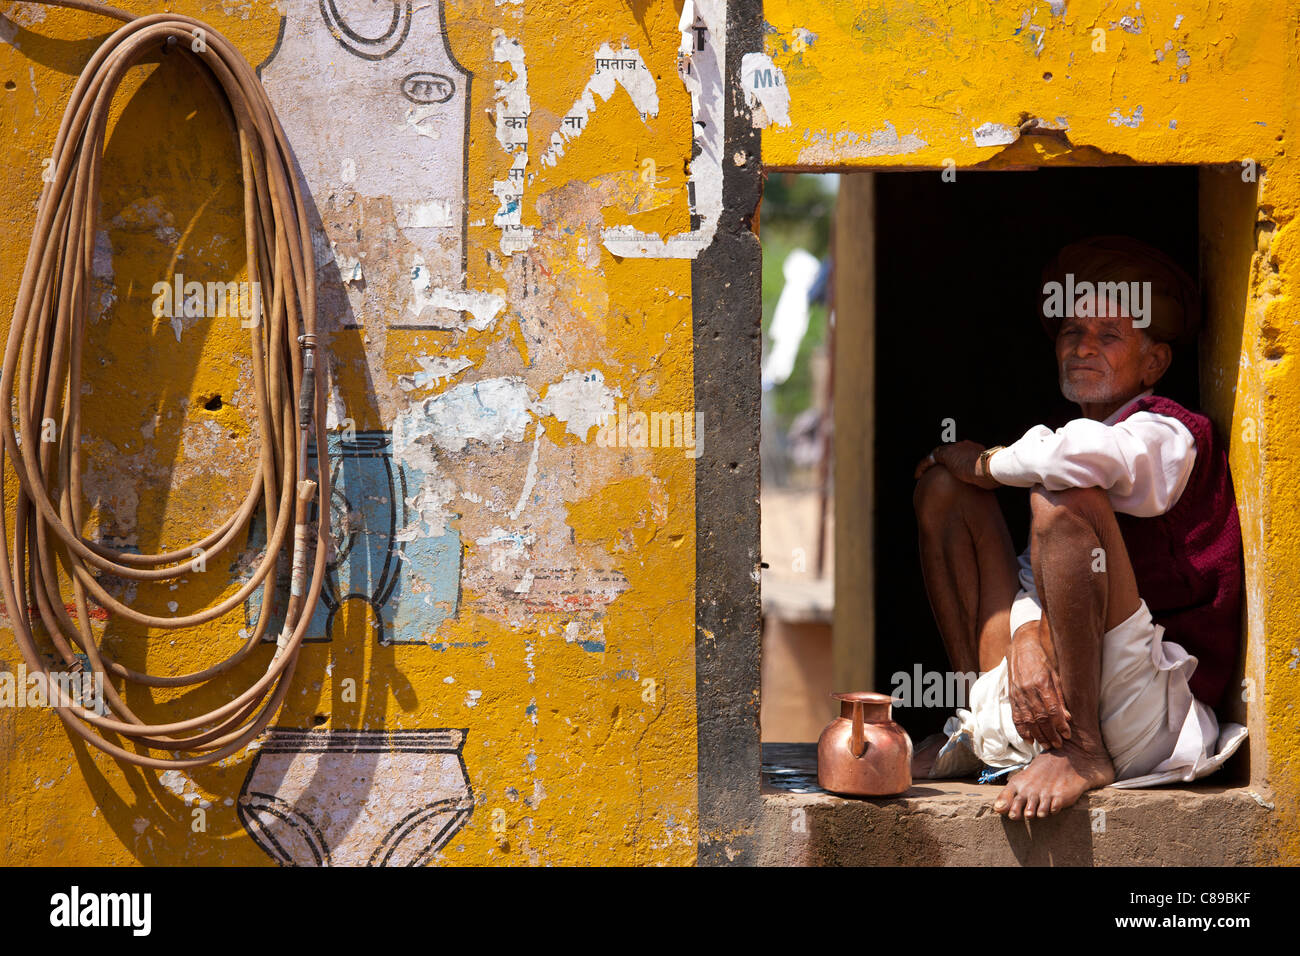 Indischer Mann in seinem Haus und Geschäft bei Ganesh Dham in Sawai Madhopur Bezirk in Rajasthan, Nordindien Stockfoto